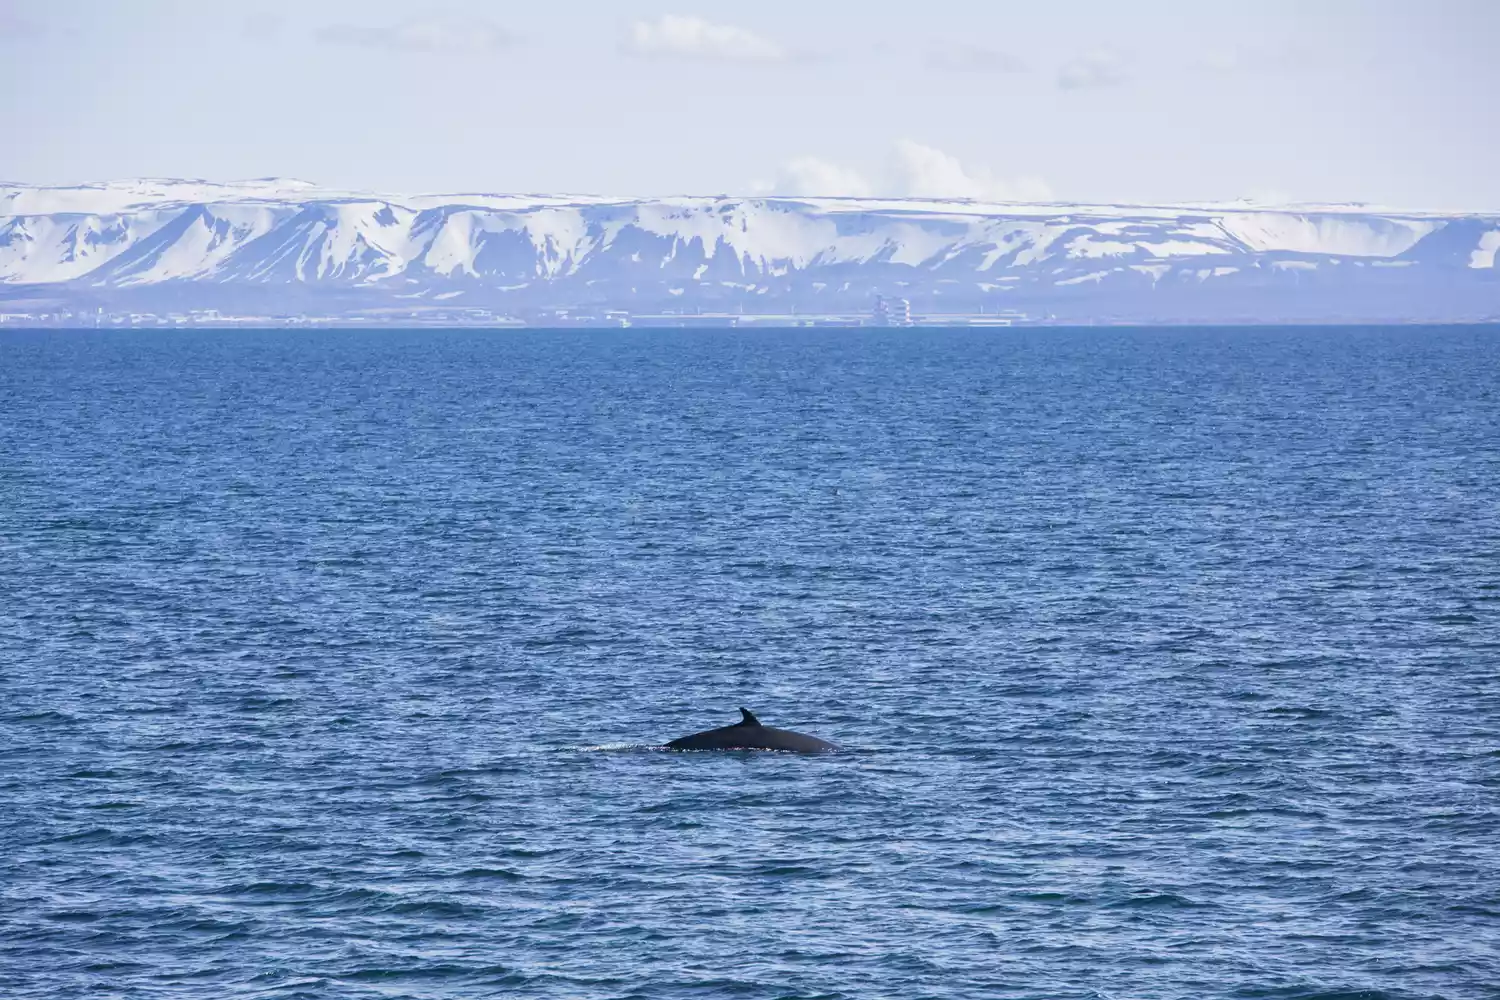 Спина кита, плывущего по голубым водам Исландии